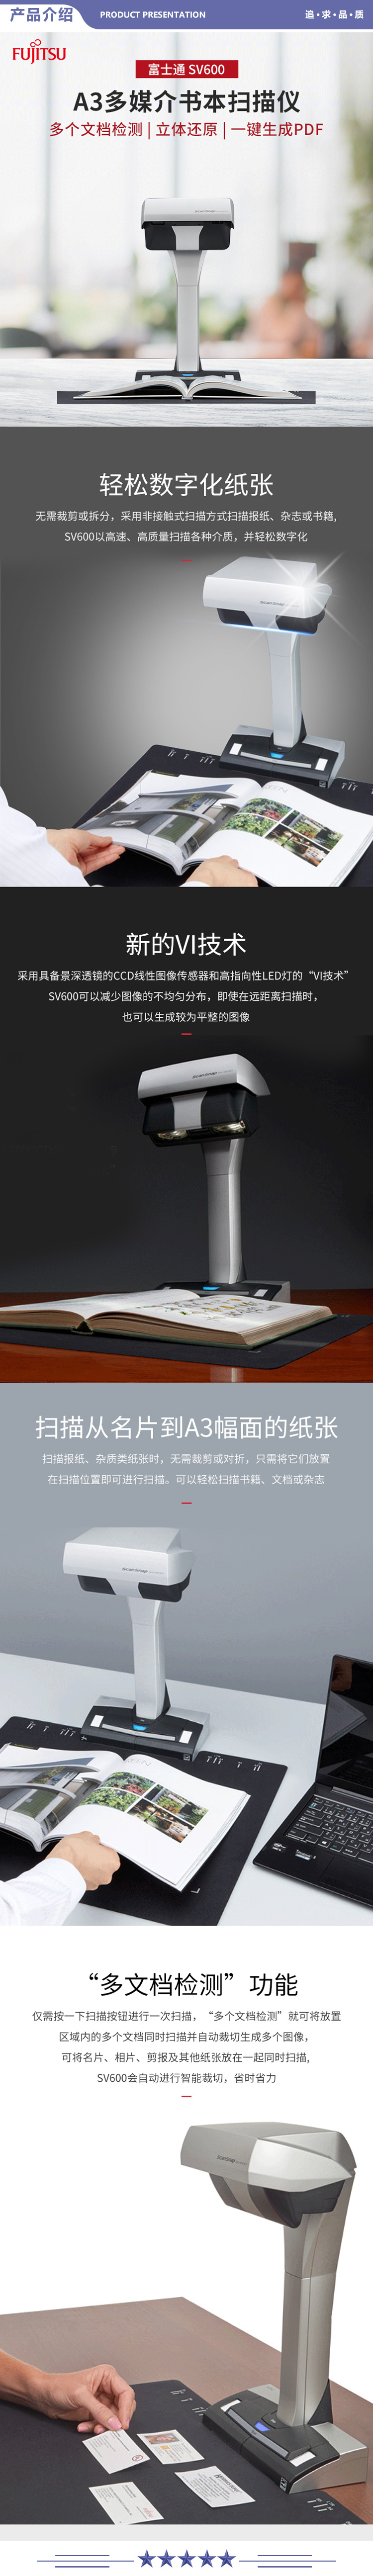 富士通 SV600 扫描仪高拍仪 高清高速 照片文档 办公商务扫描仪 2.jpg